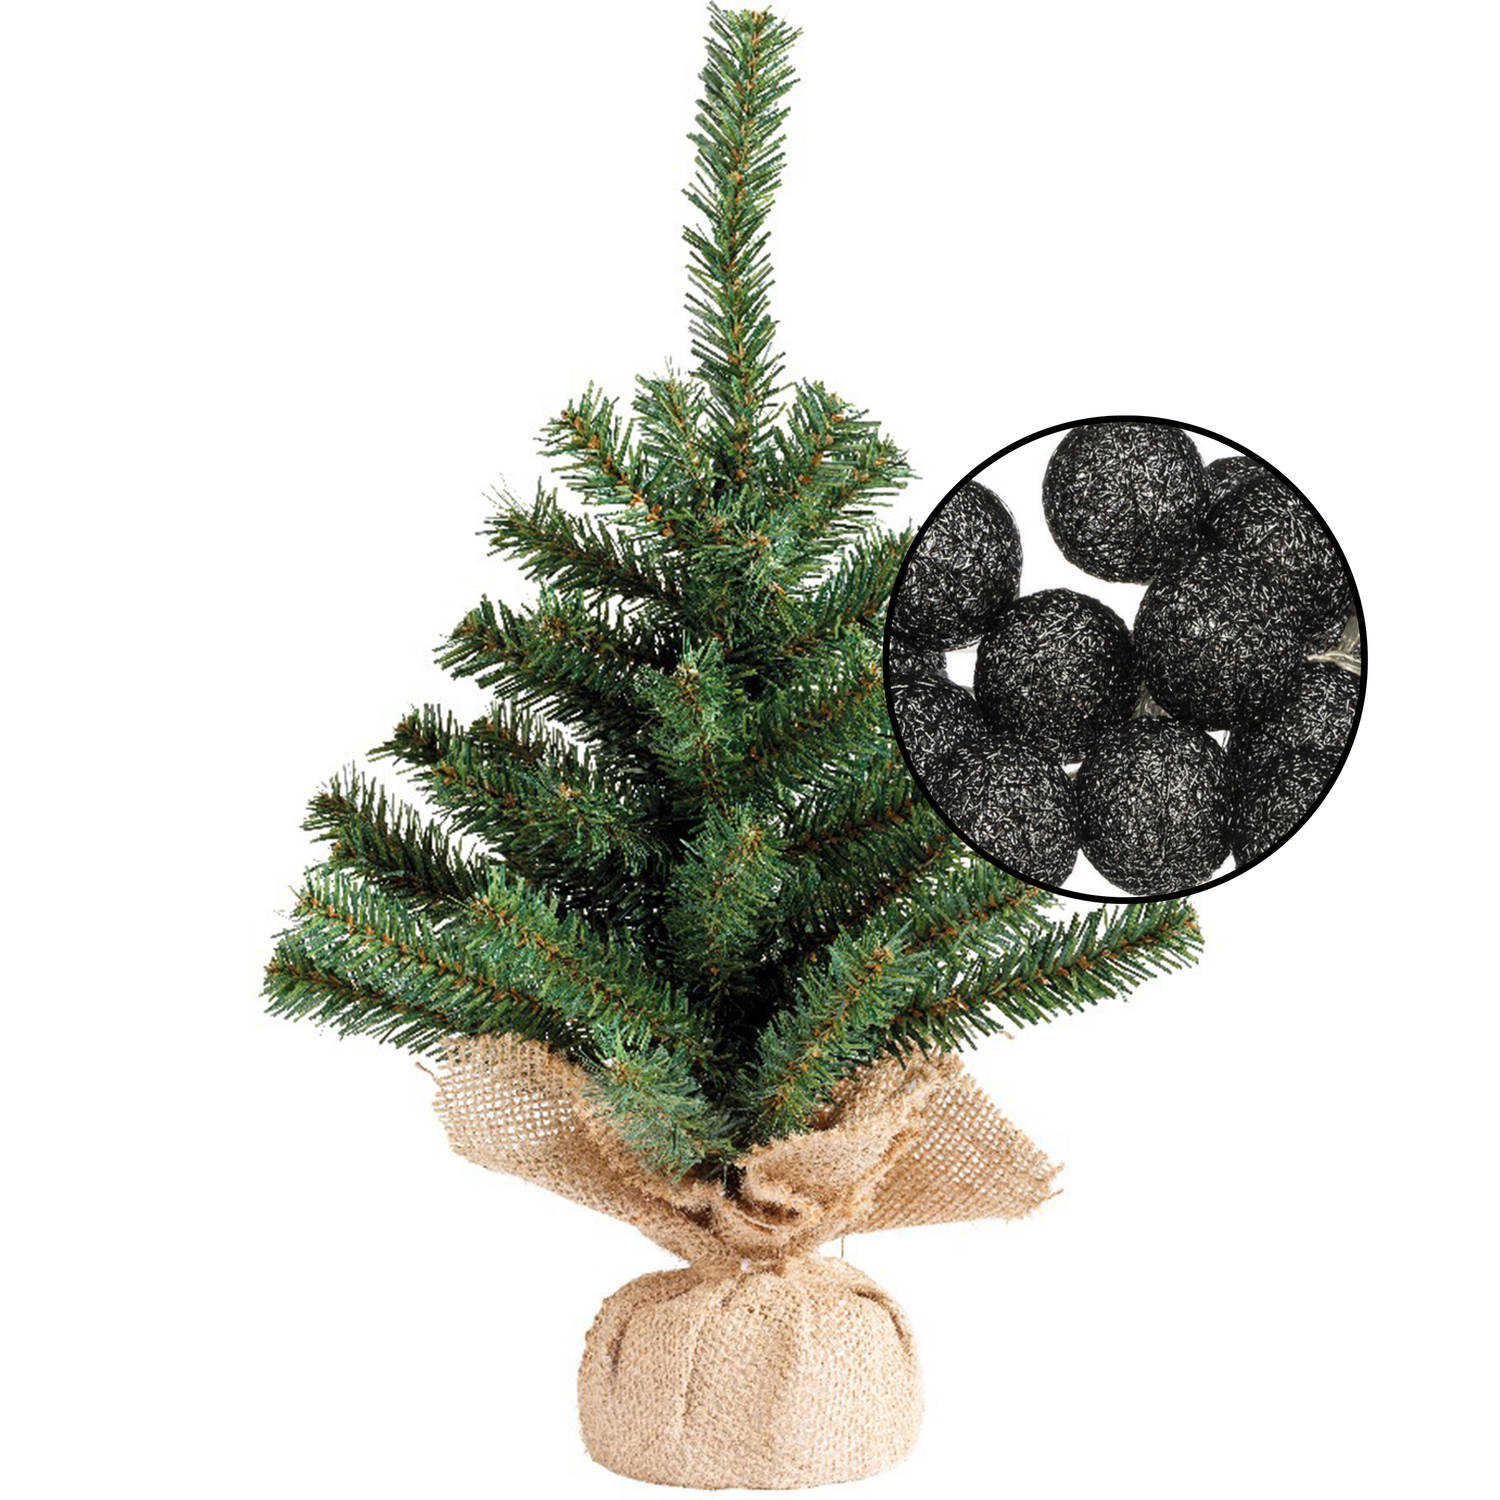 Mini kunst kerstboom groen met verlichting in jute zak H45 cm zwart Kunstkerstboom